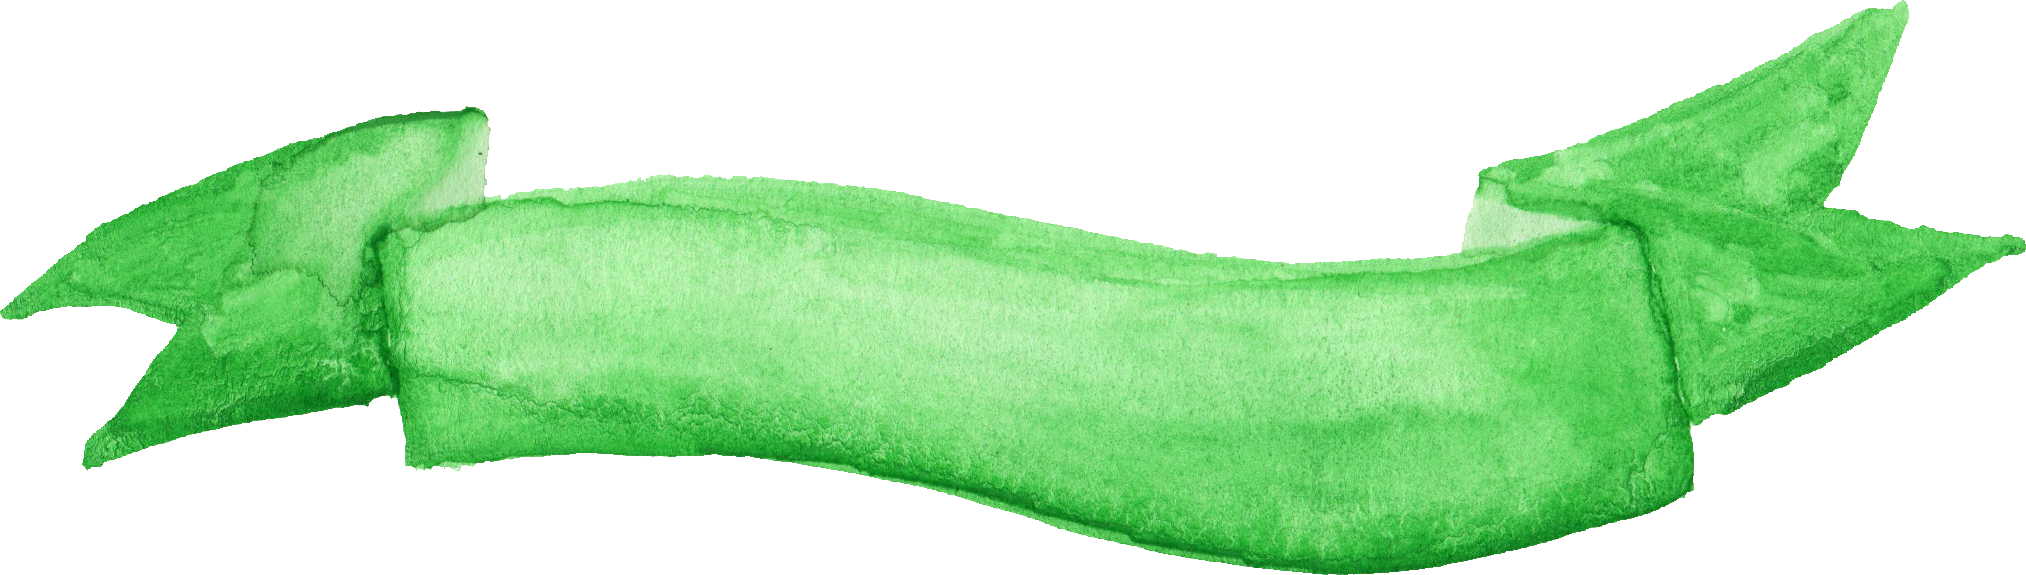 Png File Size - Watercolour Leaf Transparent (2026x575)